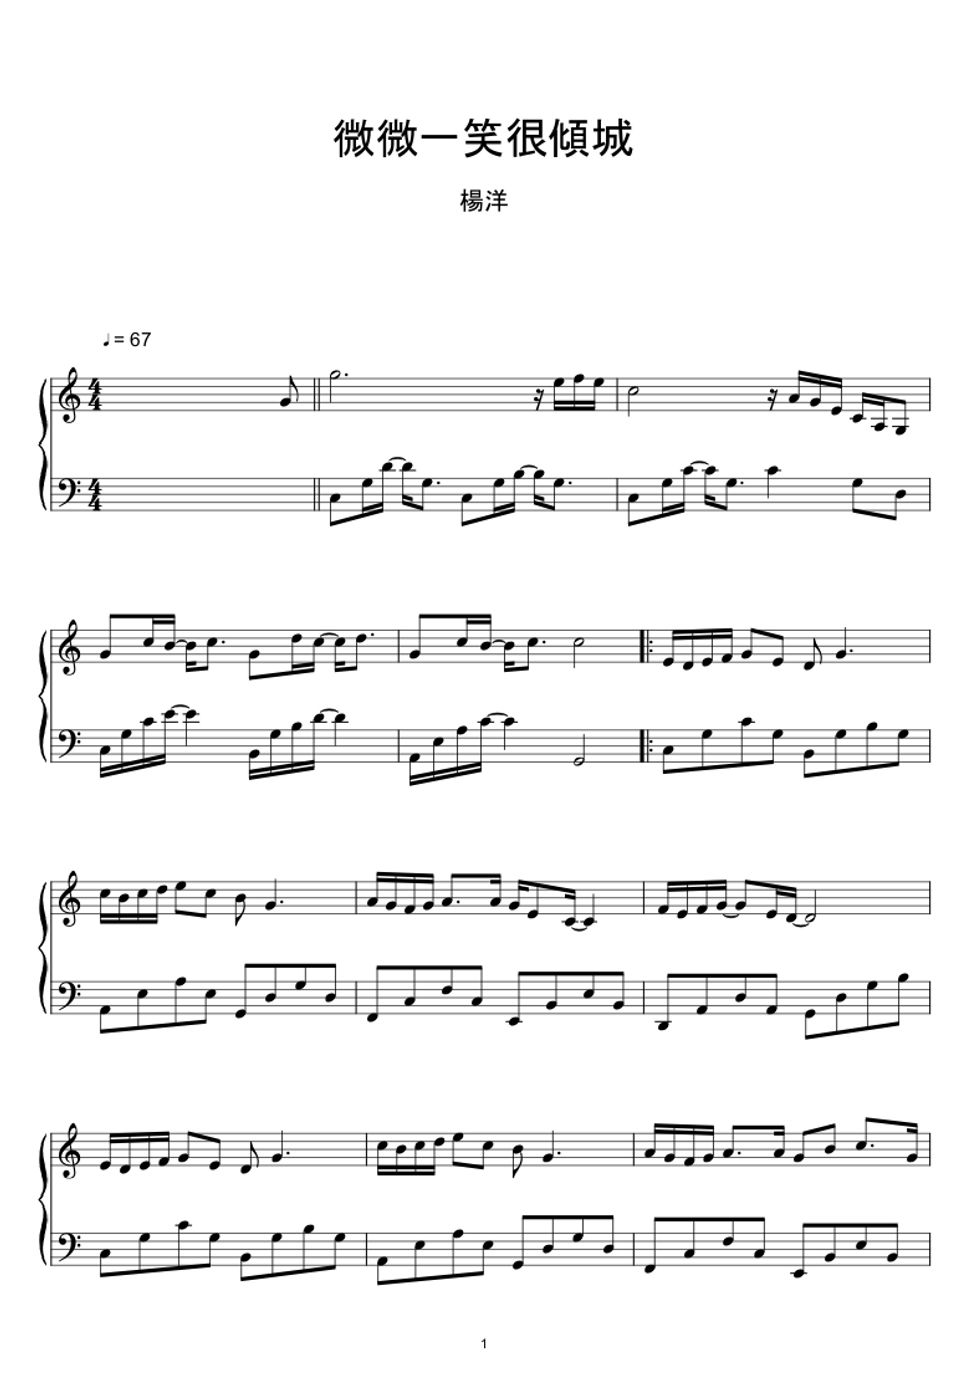 楊洋 - 微微一笑很傾城 (電視劇原聲帶) (Sheet Music, MIDI,) by sayu